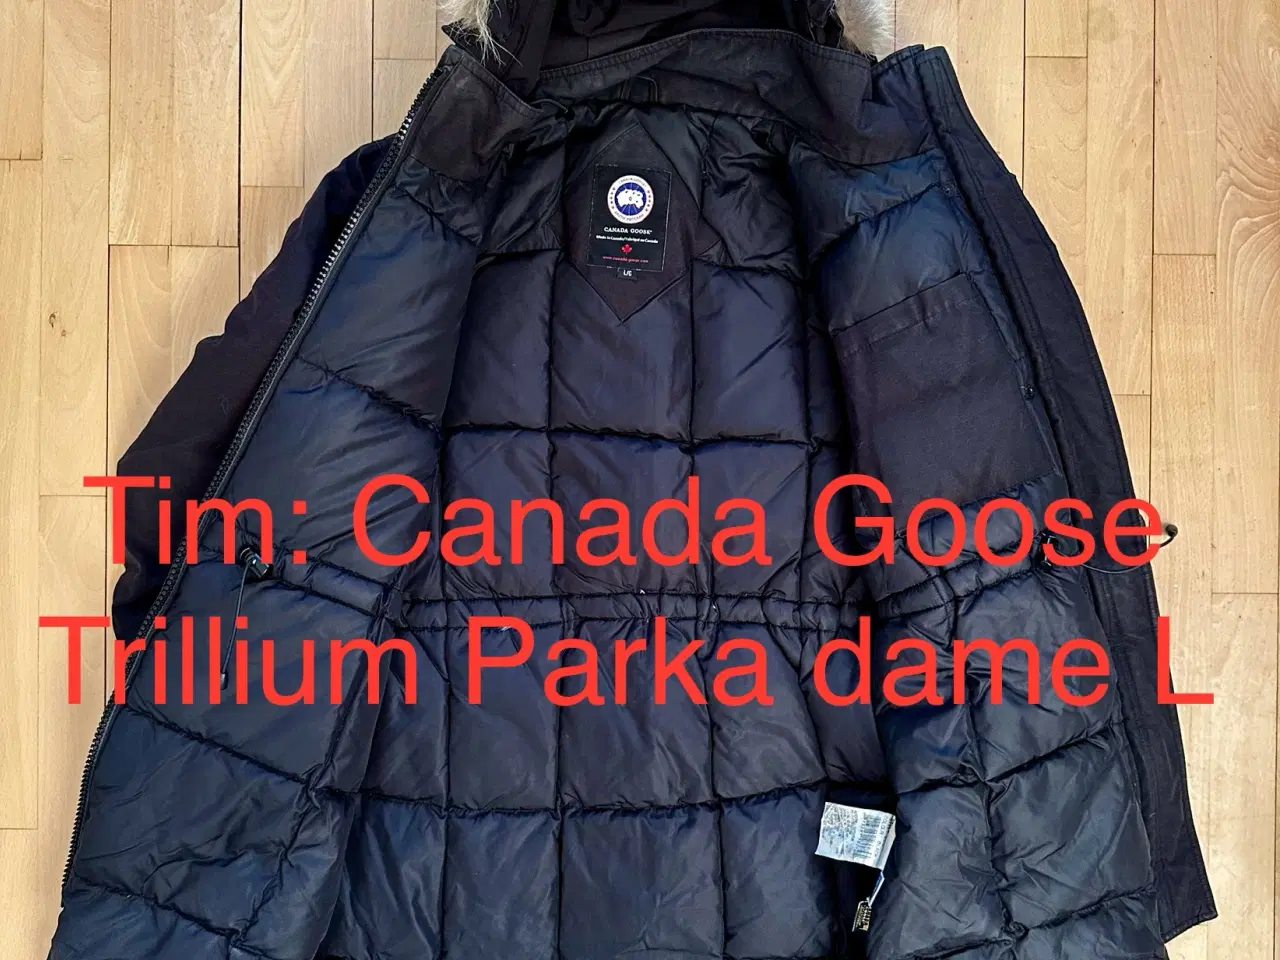 Billede 4 - Canada Goose Trillium Parka dame L 